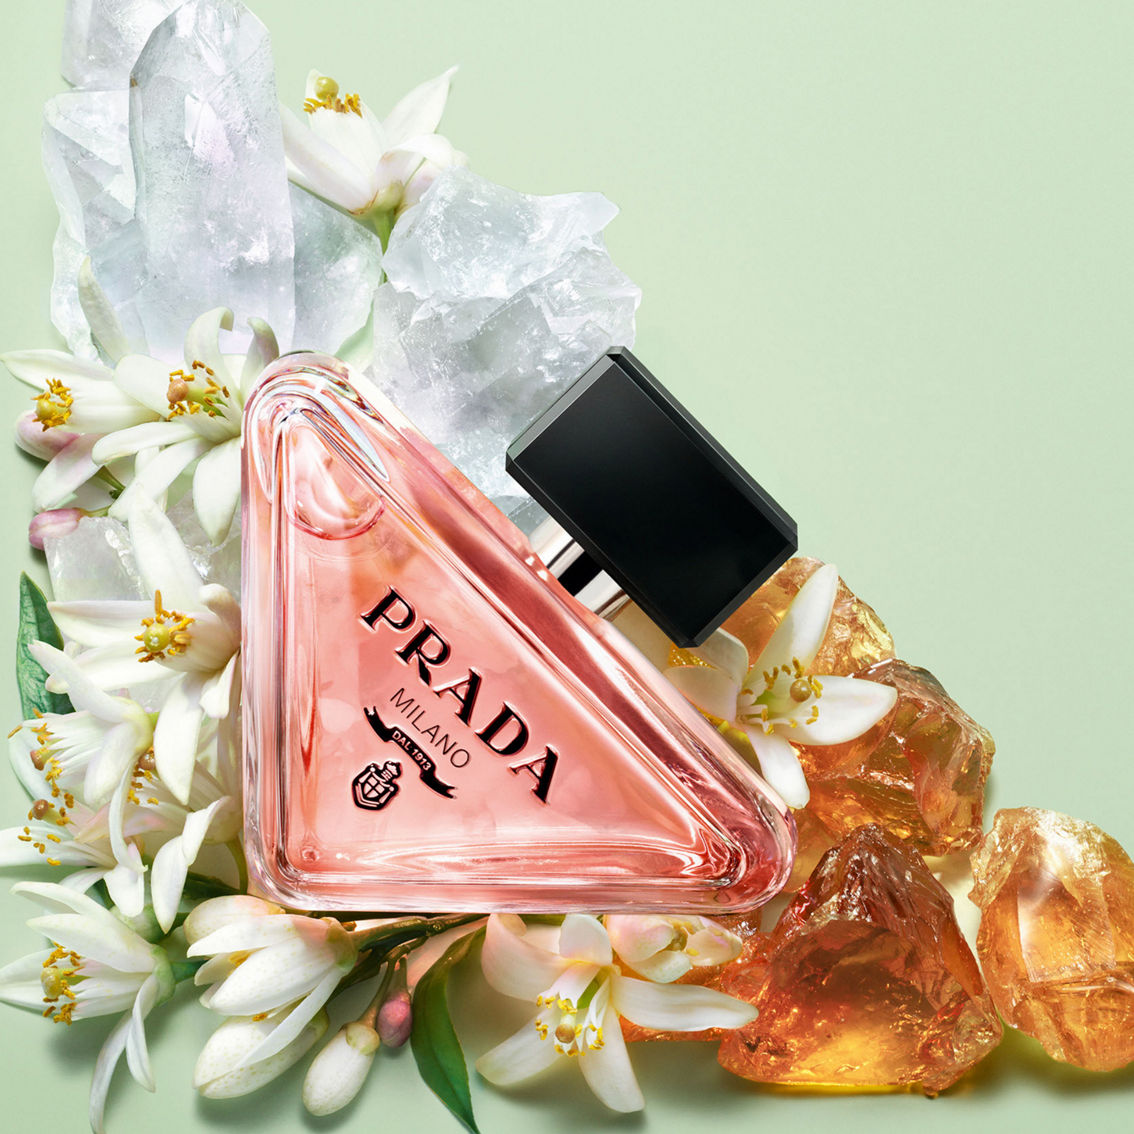 Prada Paradoxe Eau de Parfum 3 pc. Gift Set - Image 2 of 2